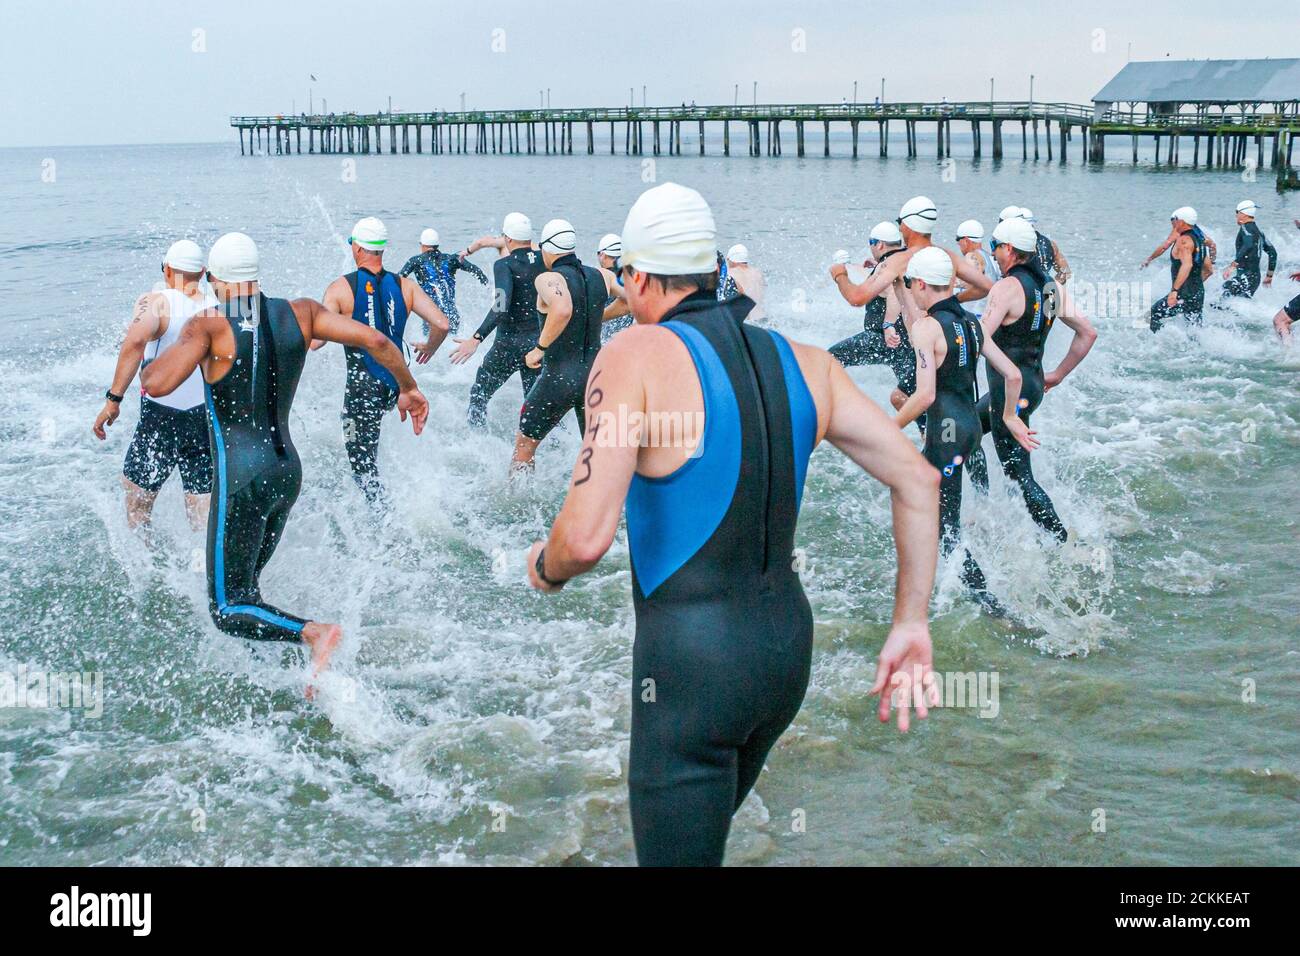 Hampton Virginia,Tidewater Area,Buckroe Beach,Tri American Triathlon annuel événement, nageurs hommes concurrents hommes les participants commencent la course entrant dans l'eau Banque D'Images